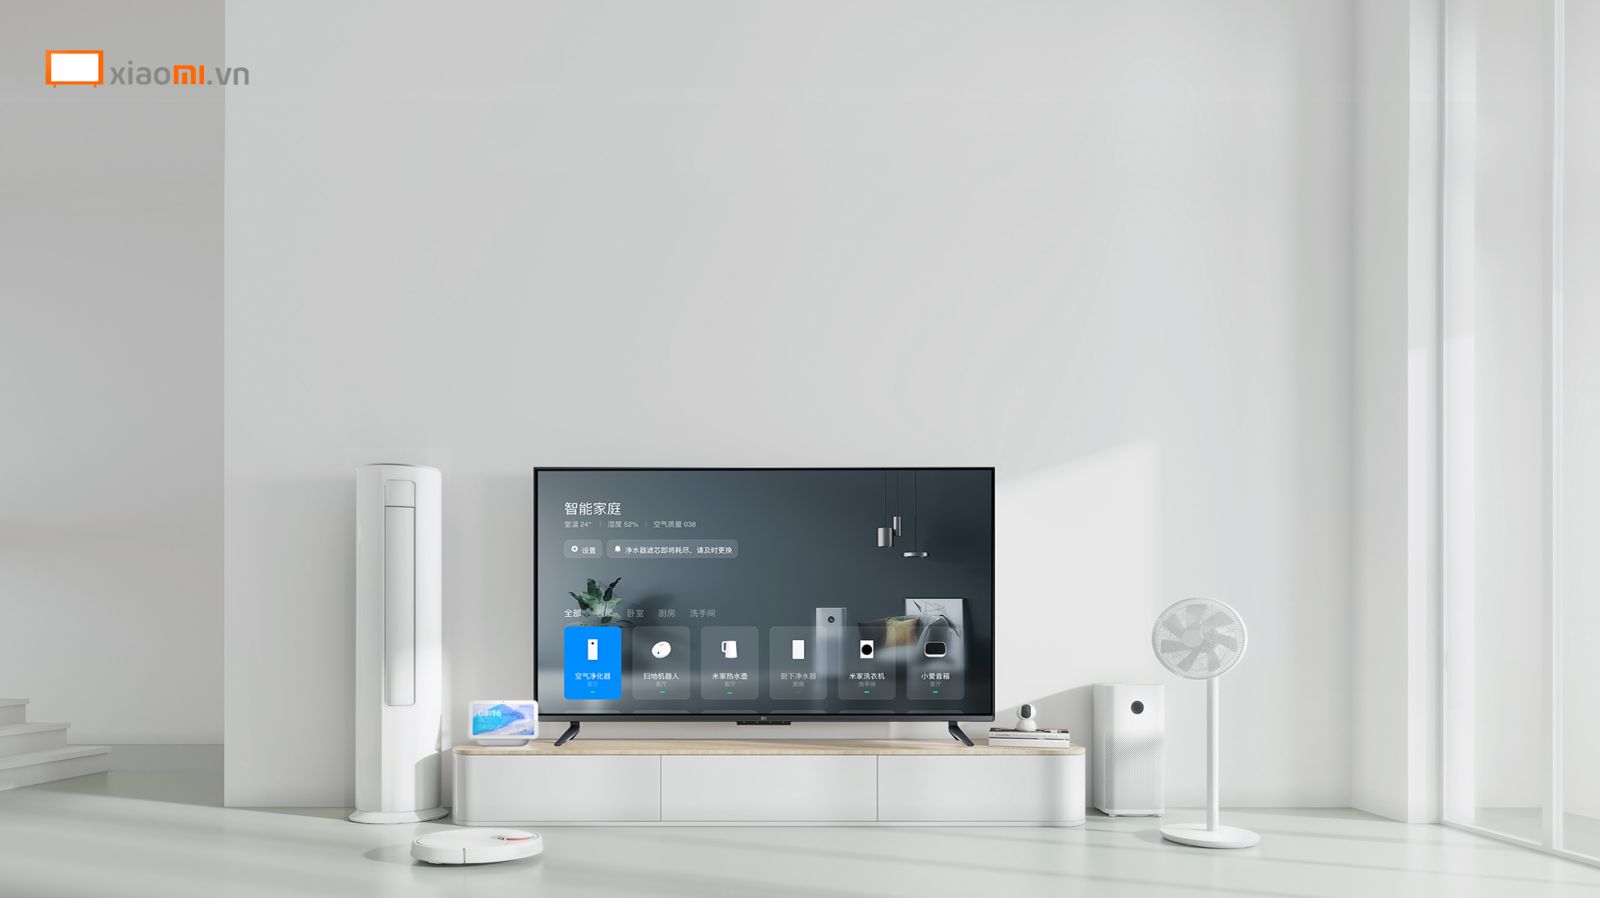 Tivi Xiaomi EA55 2022 thích hợp lắp đặt trong bất cứ không gian nào với thiết kế tối giản và sang trọng